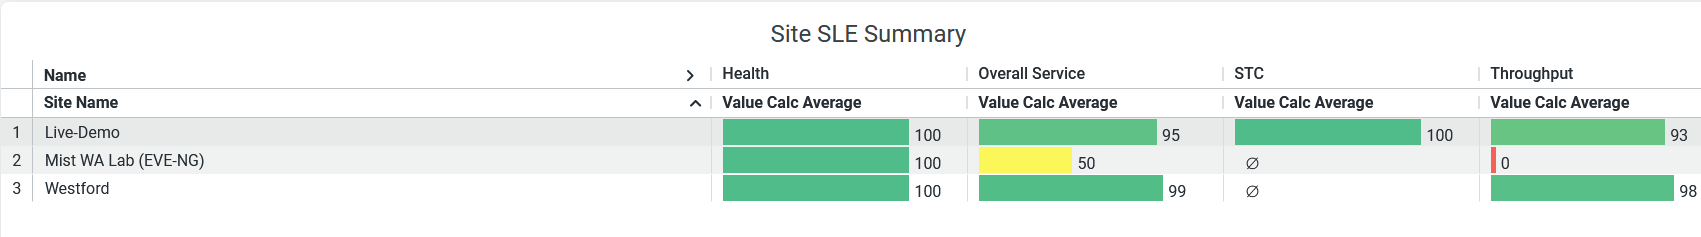 Site SLE Summary